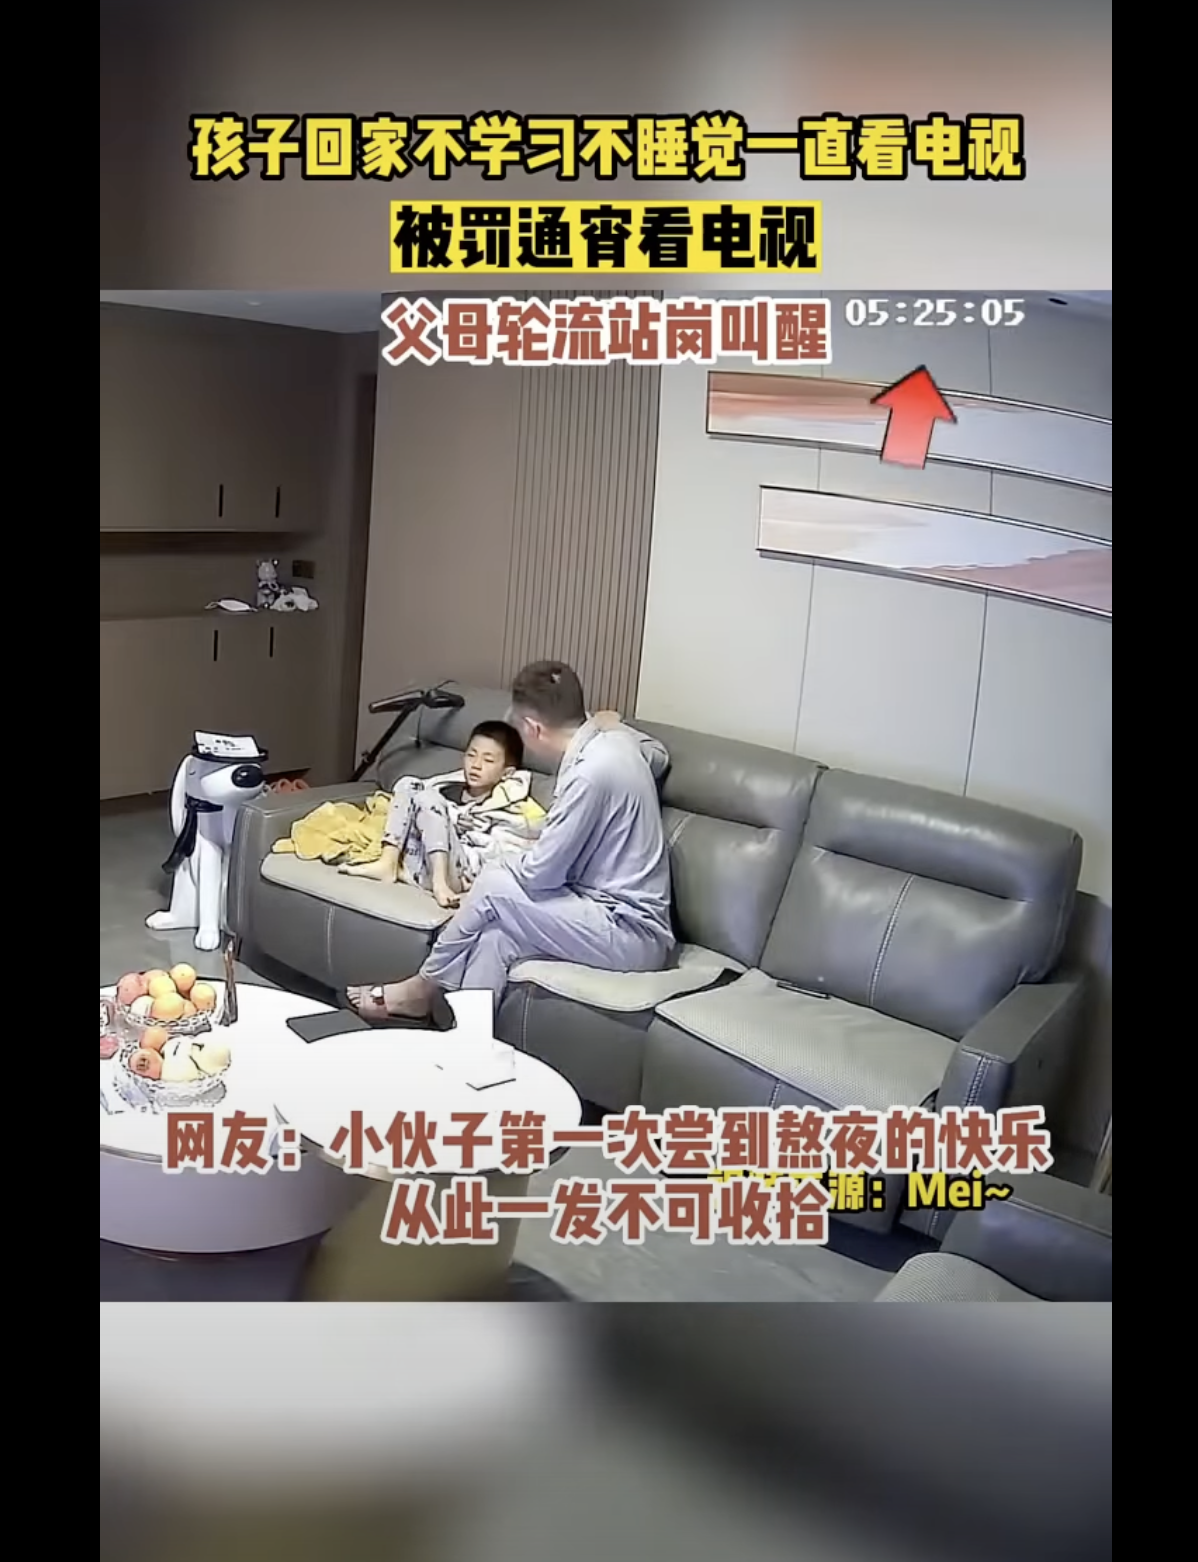 Le garçon avec son père dans le salon. | Source : youtube.com/趣事大赏